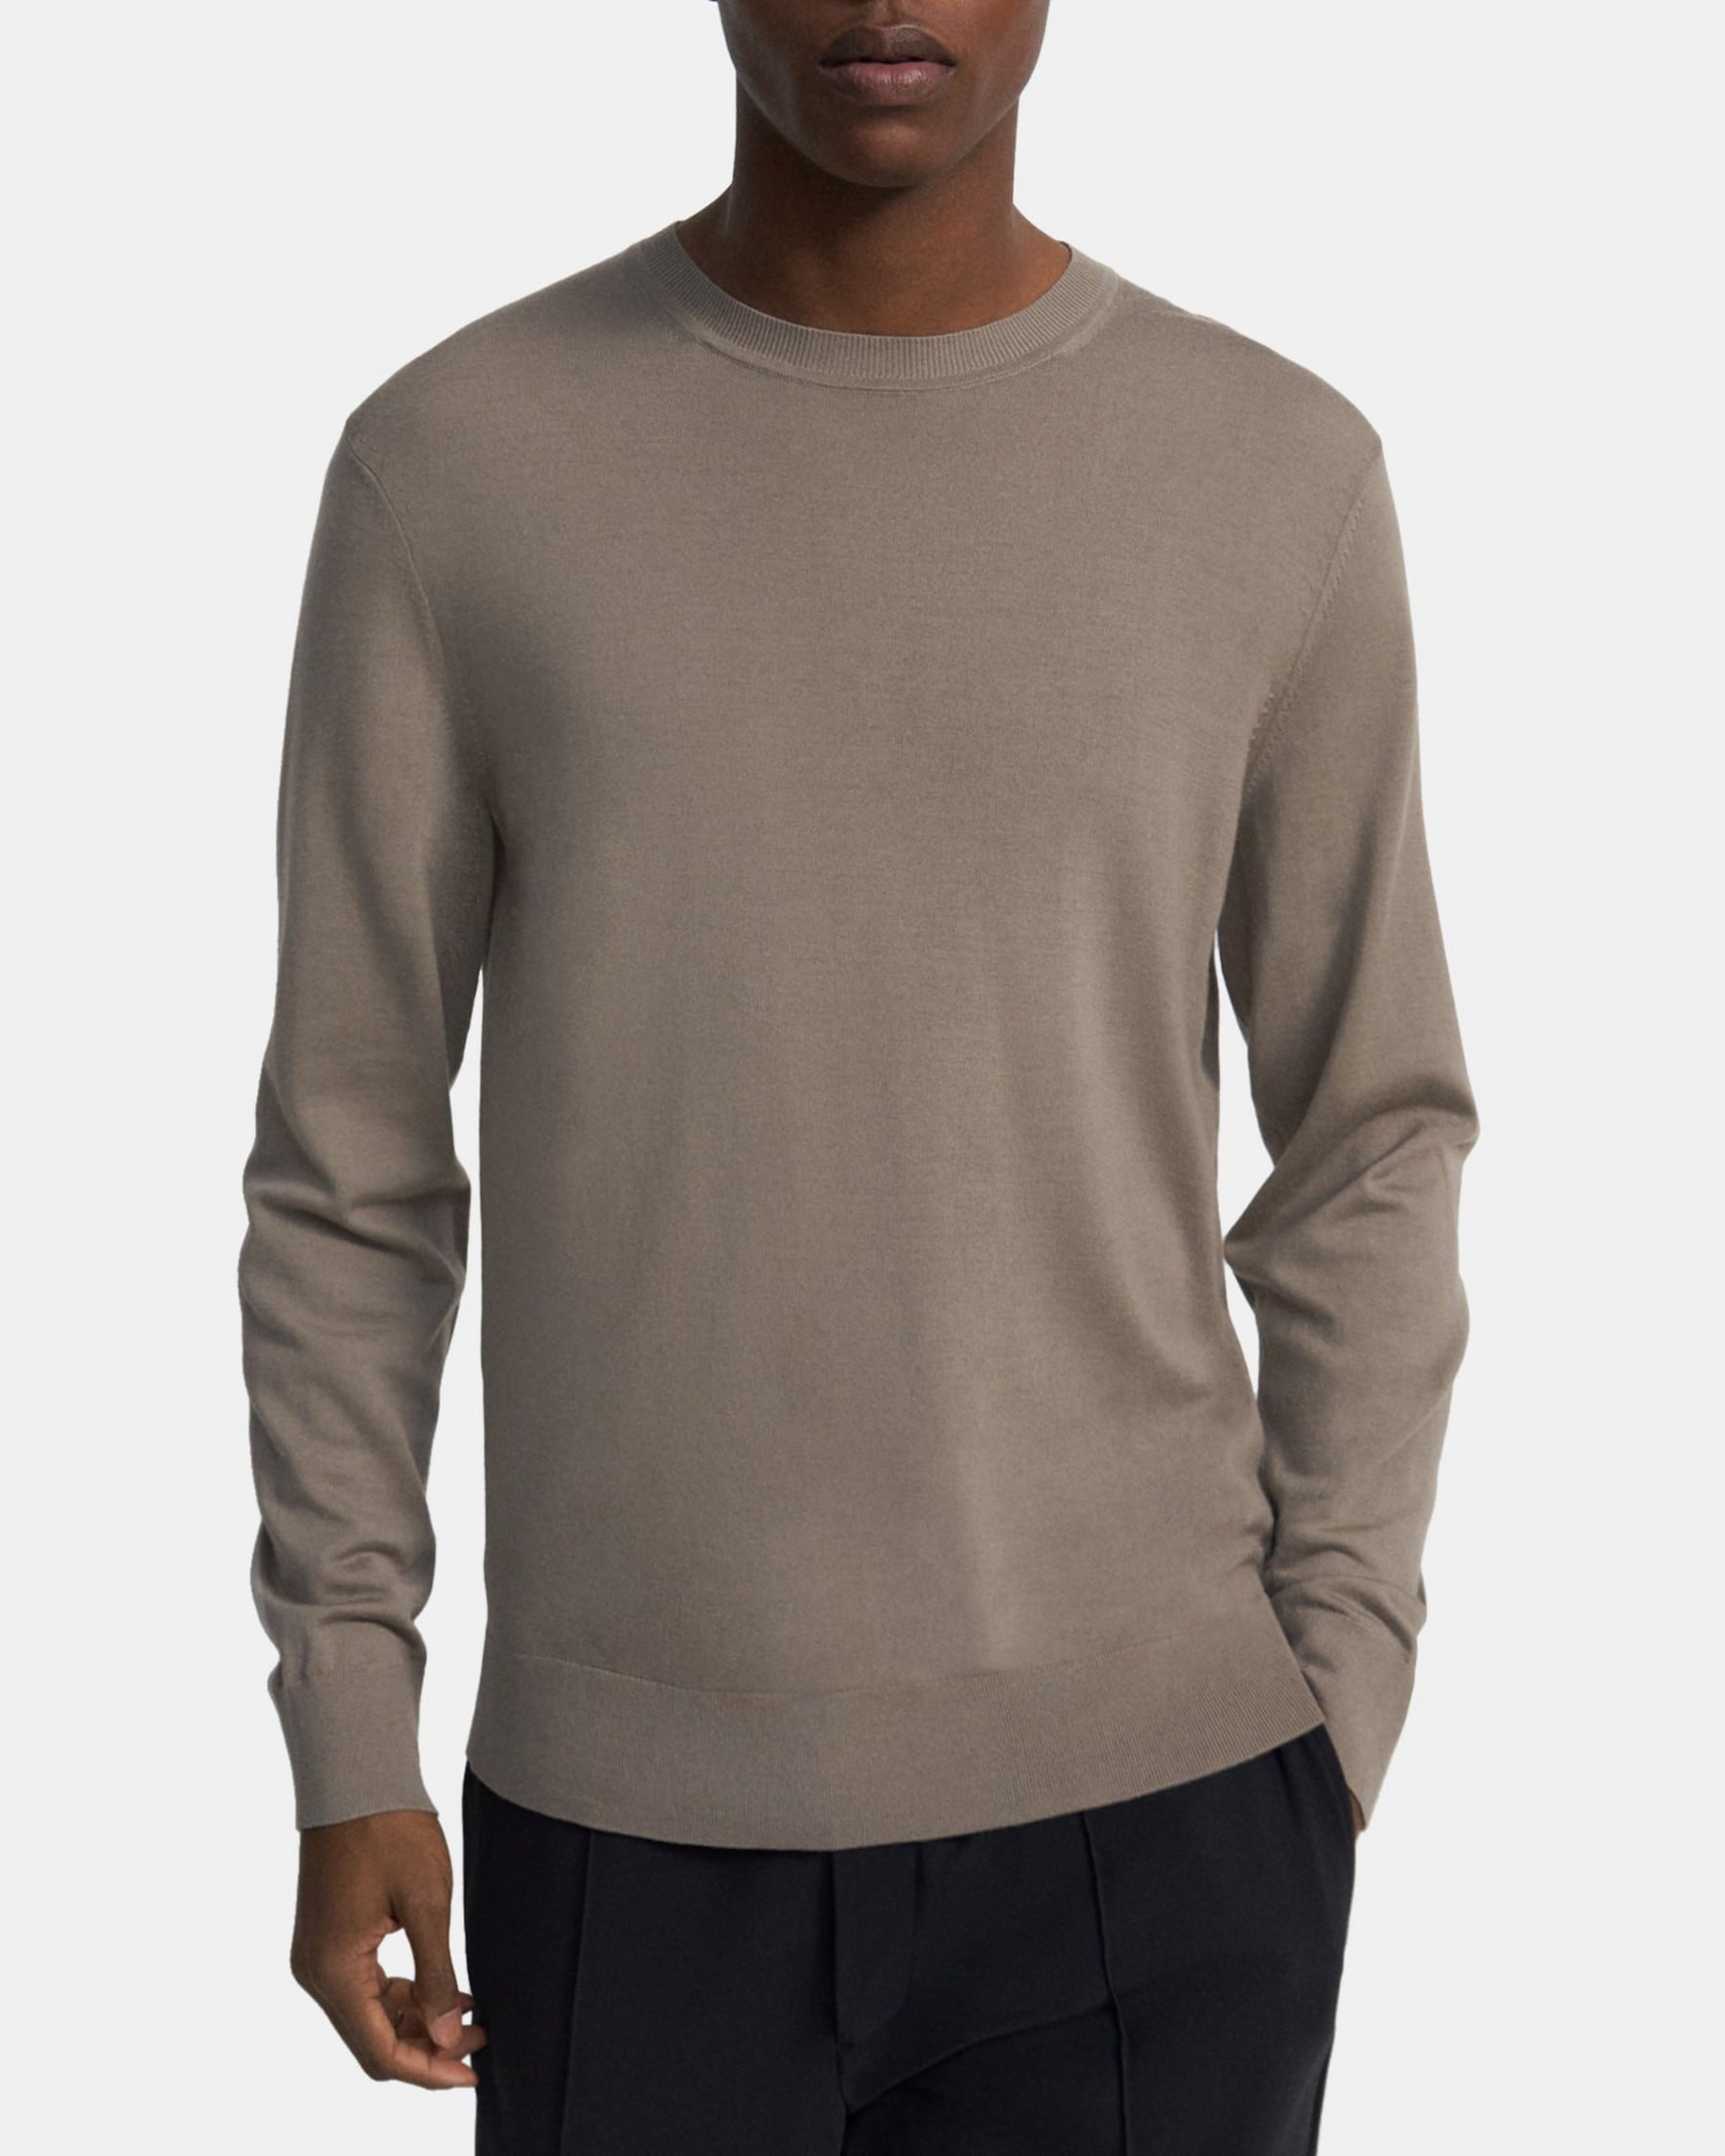 띠어리 Theory Crewneck Sweater in Merino Wool,TAPIR